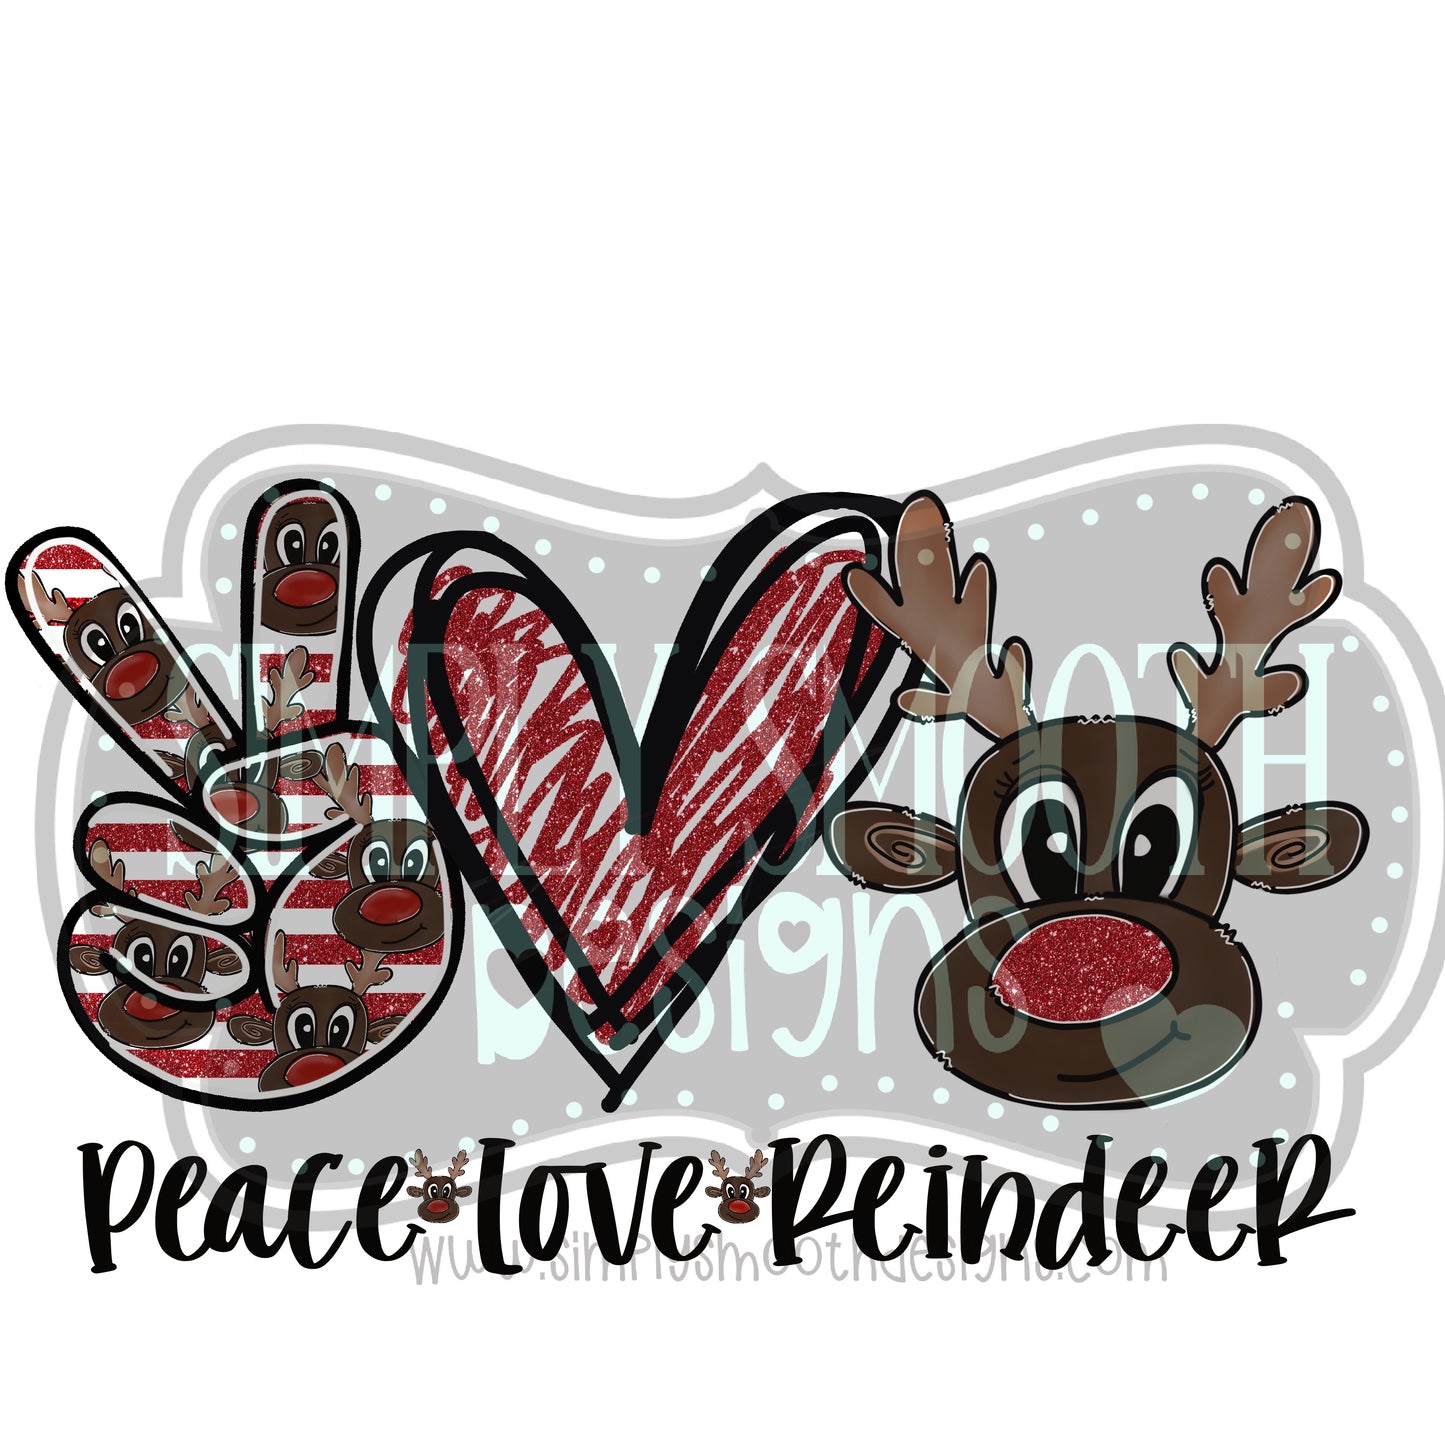 Peace love reindeer